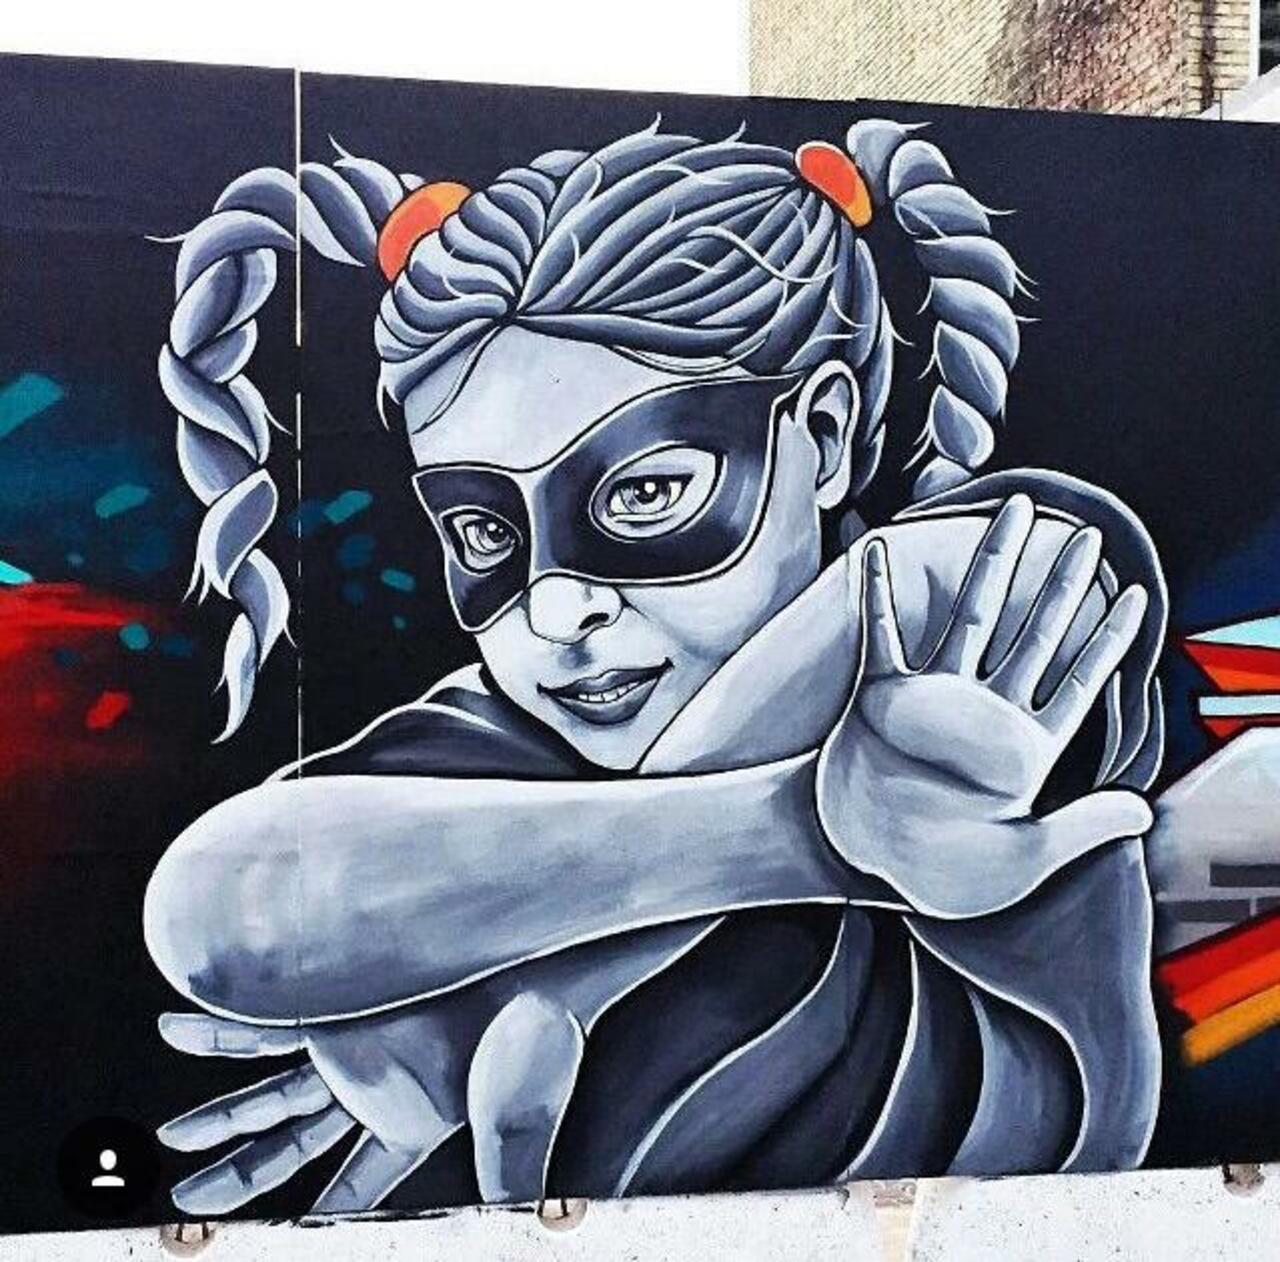 RT:GoogleStreetArt Street Art by Stinehvid 

#art #graffiti #mural #streetart http://t.co/LZcdVx8nEP